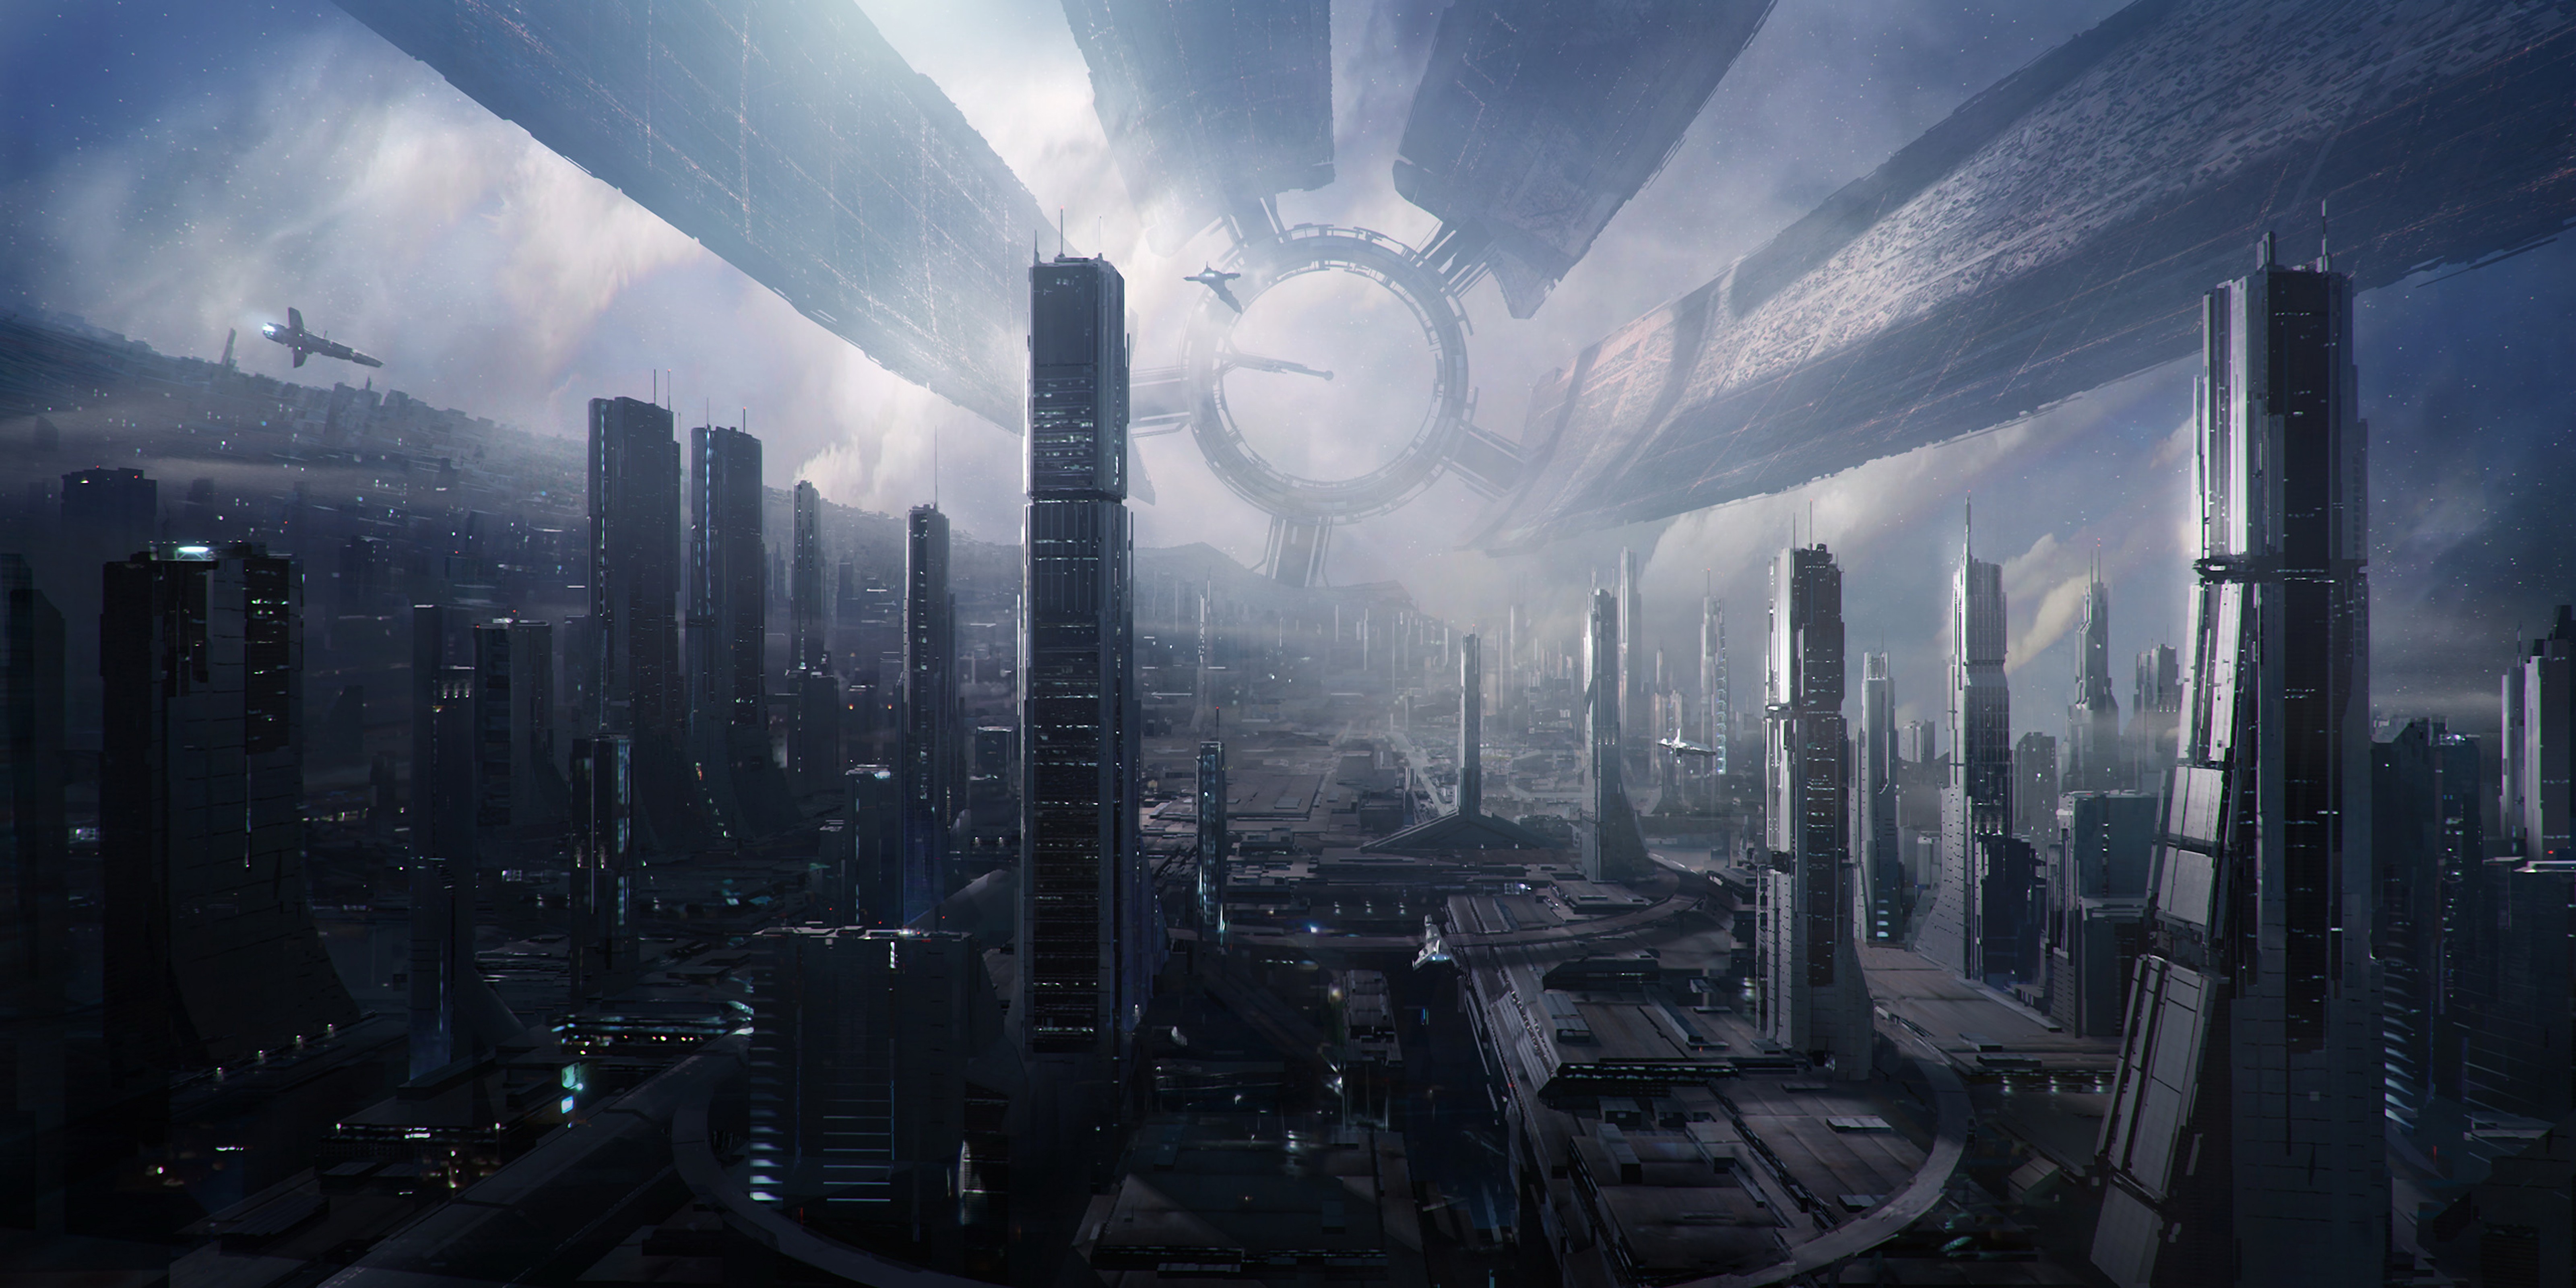 Video Game Mass Effect 2 4k Ultra HD Wallpaper by Mikko Kinnunen